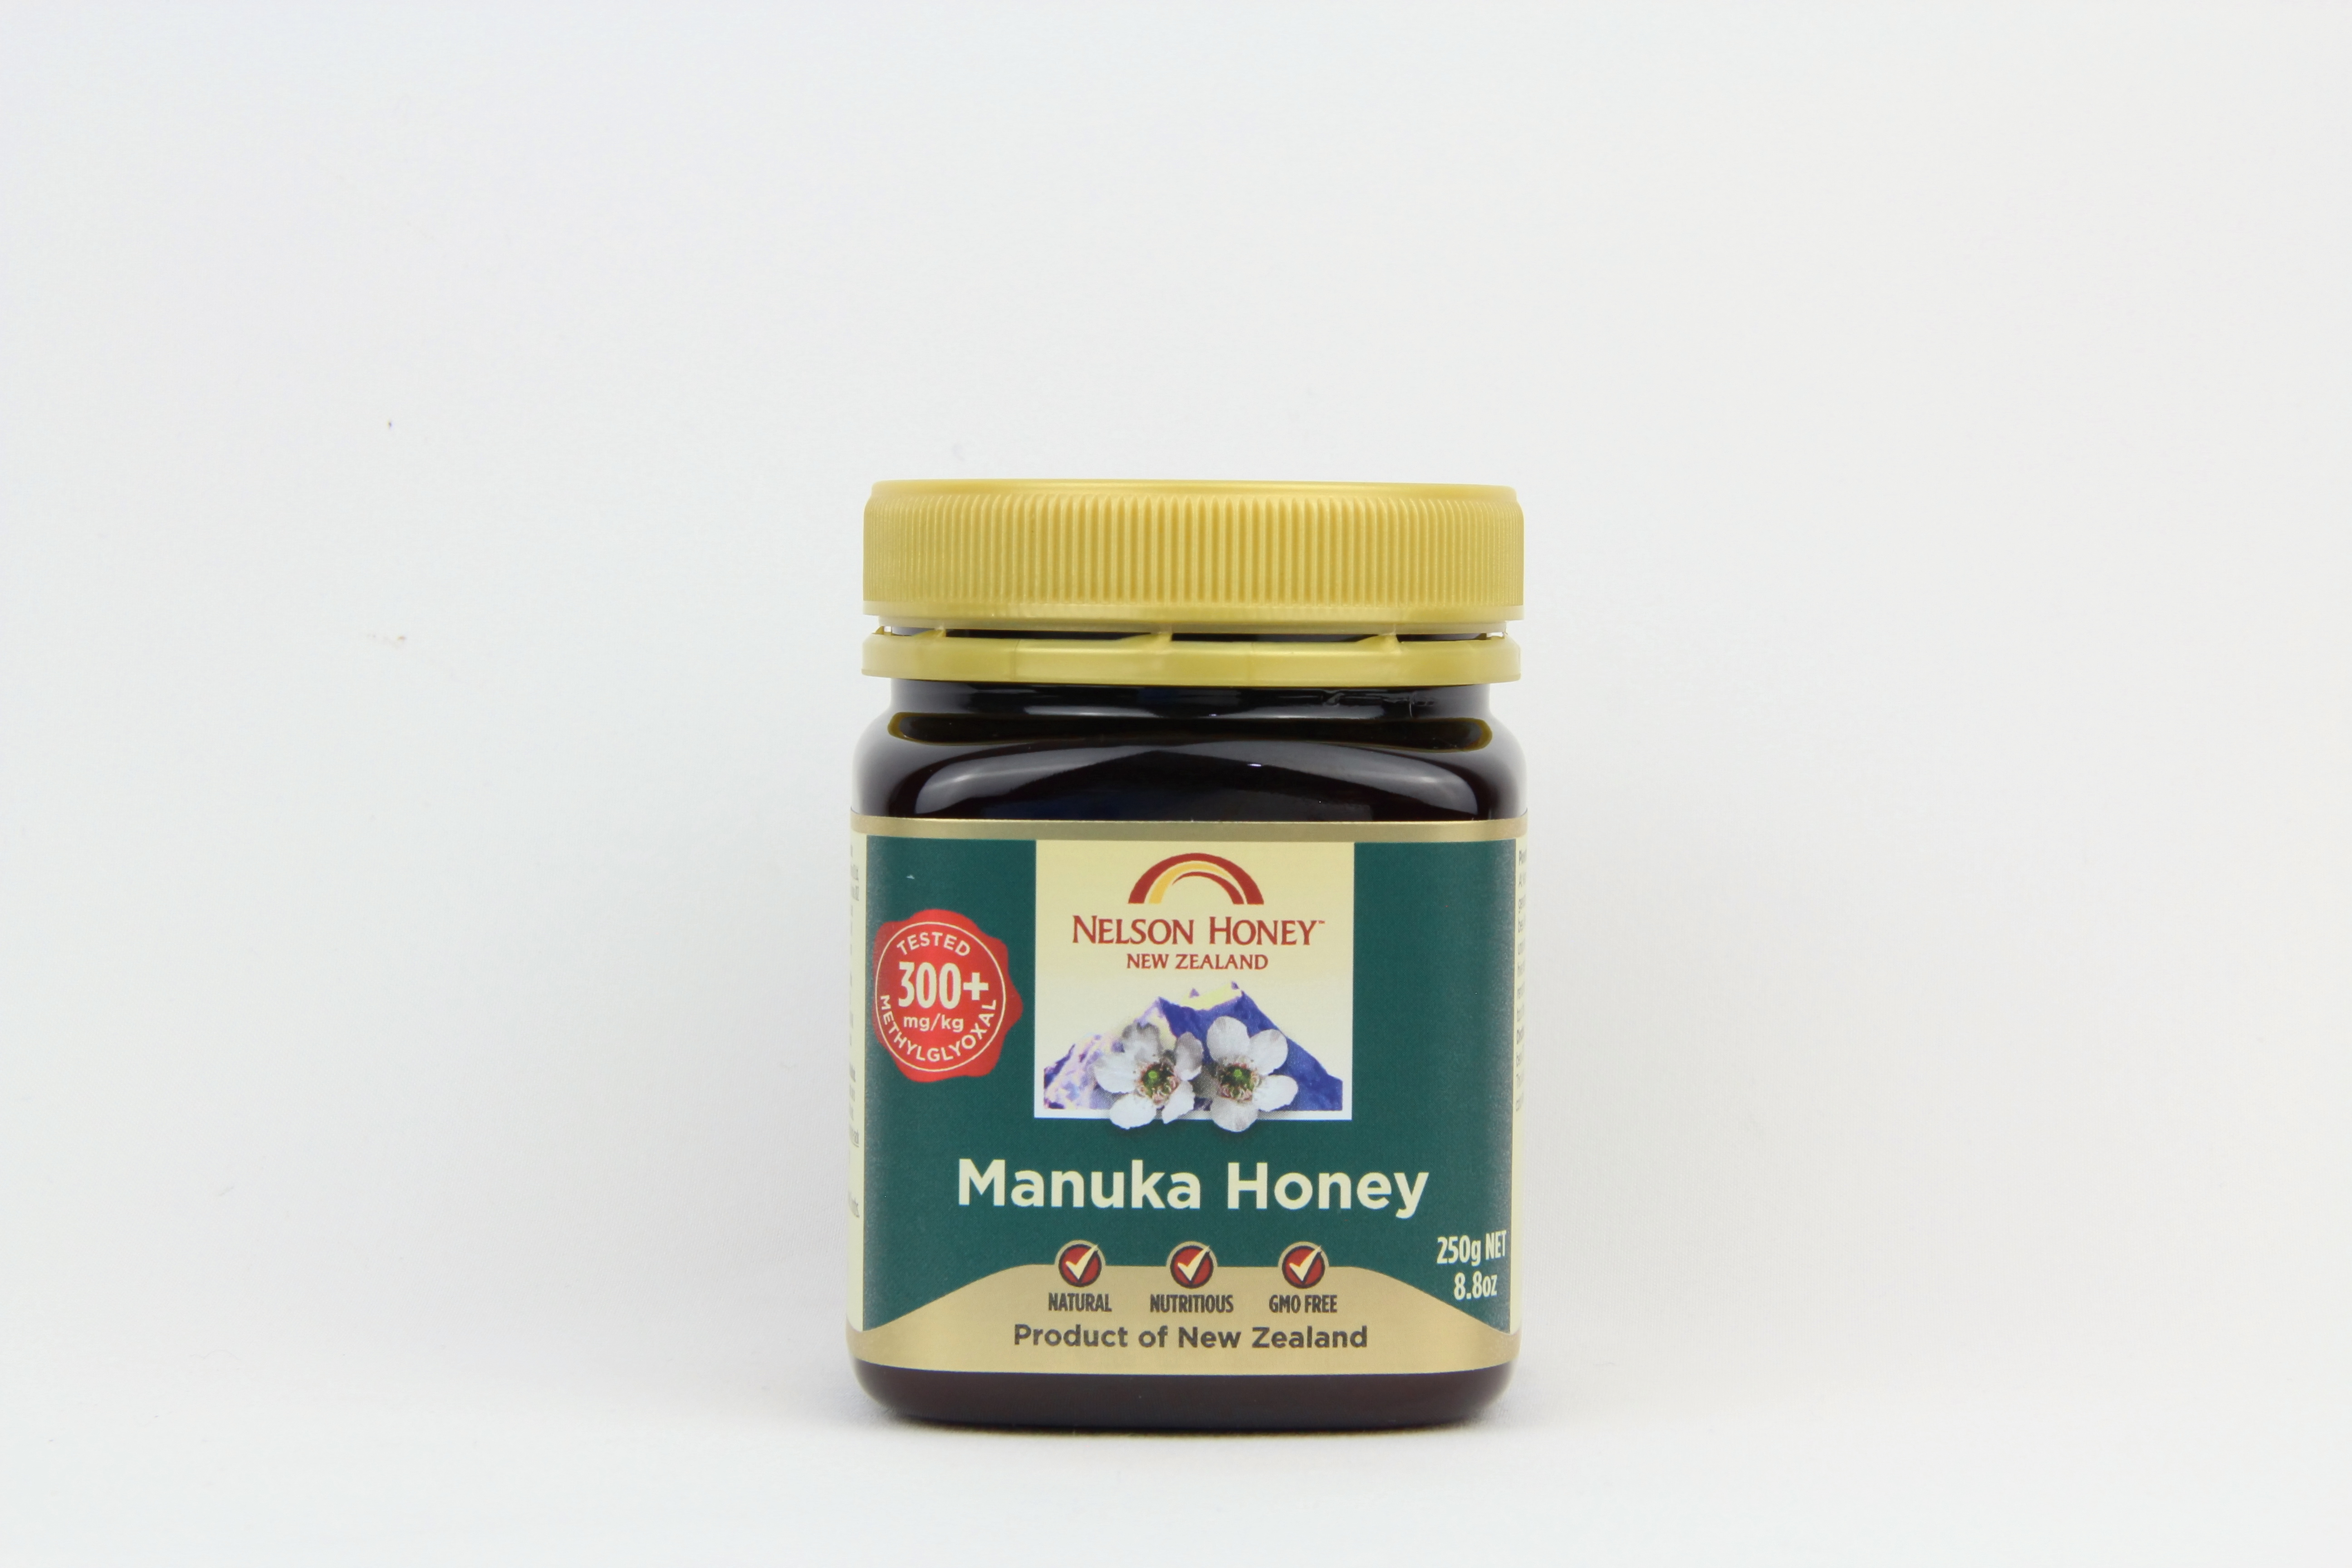 Nelson Honey New Zealand Manuka Honey 300+ 250gm